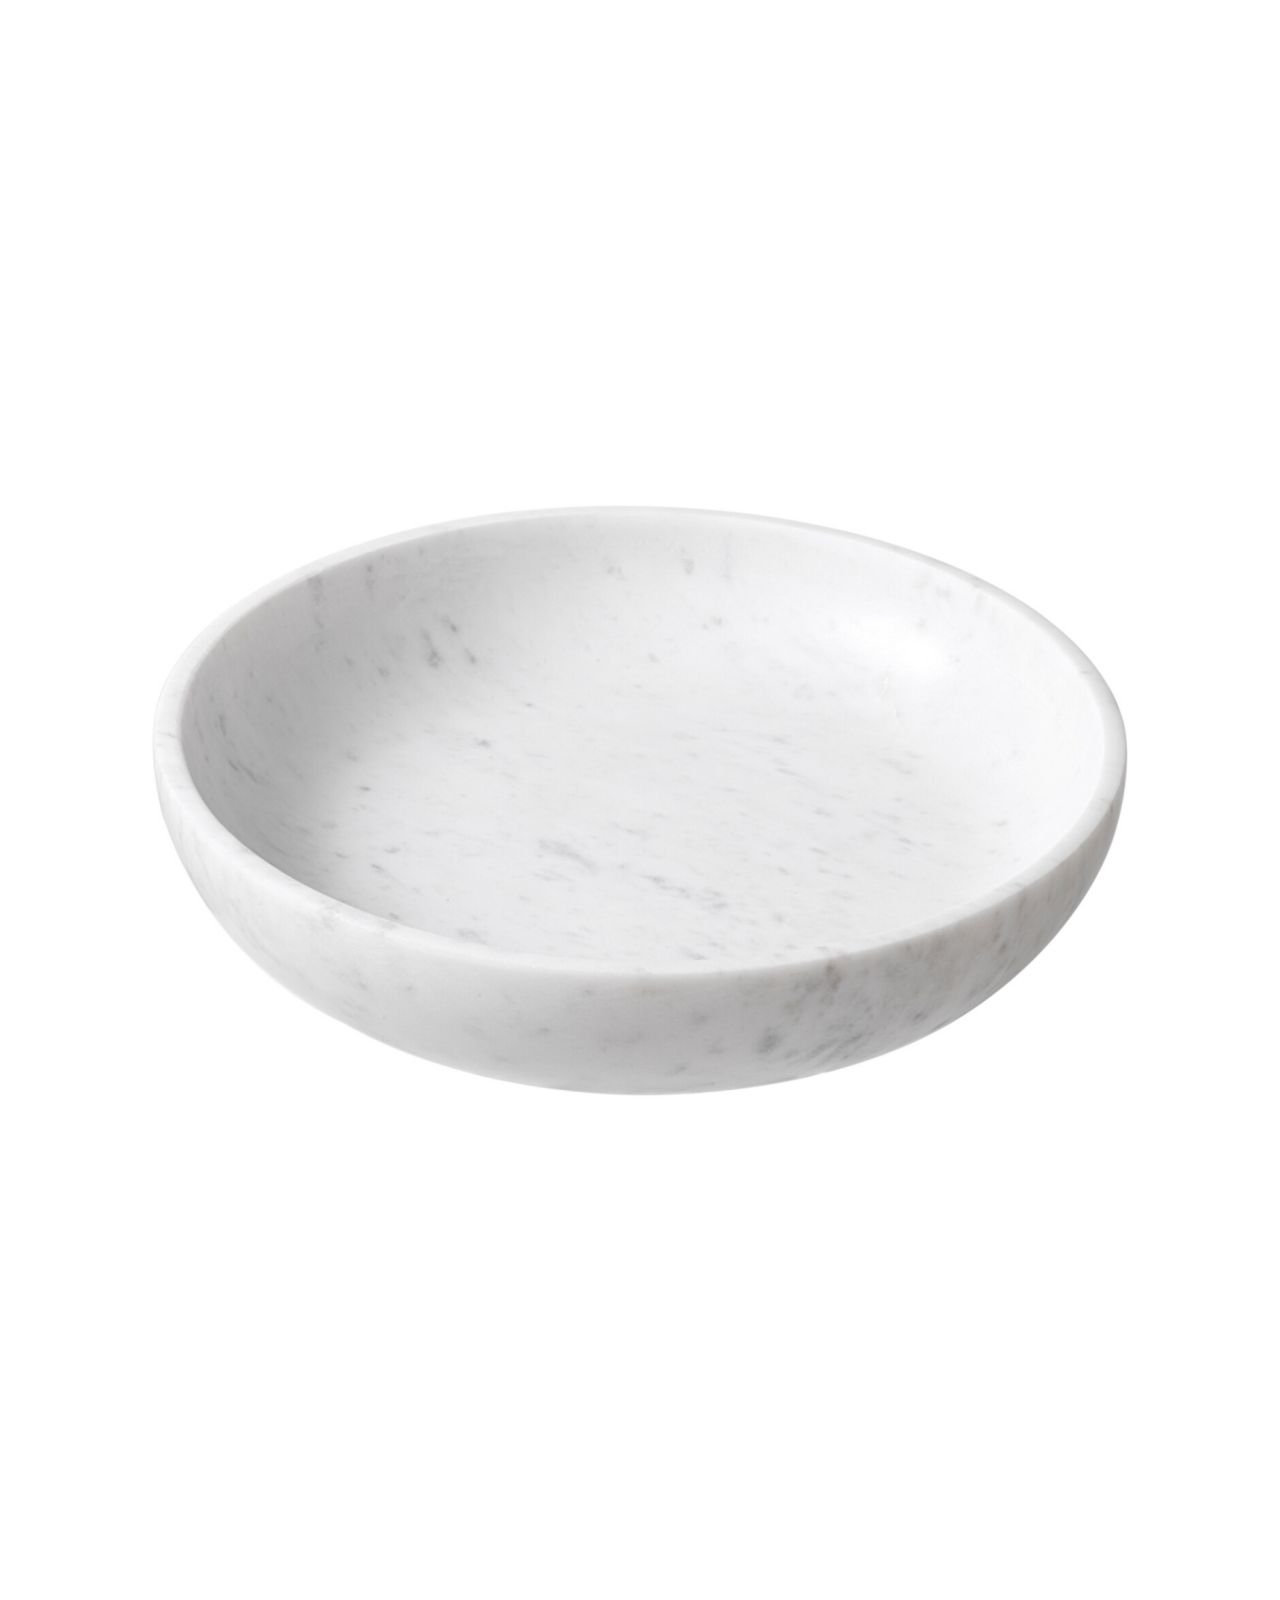 Revolt bowl white marble